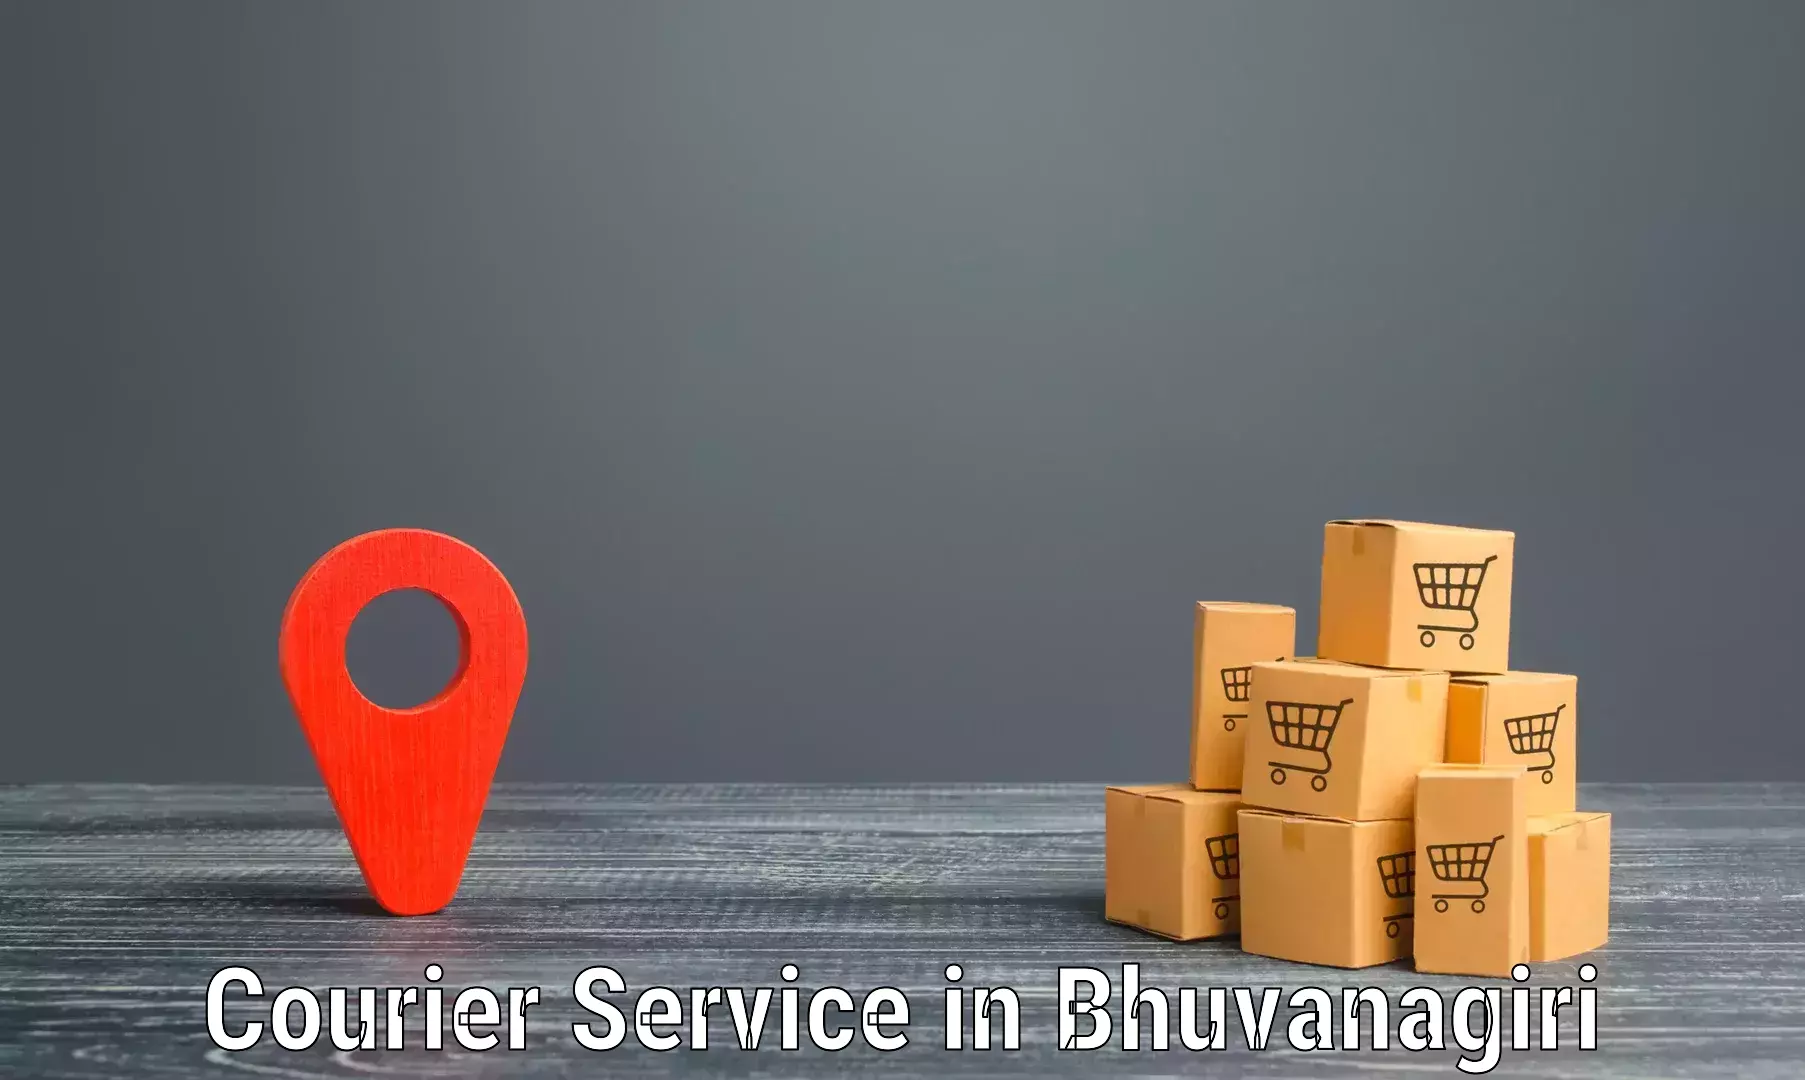 Comprehensive freight services in Bhuvanagiri